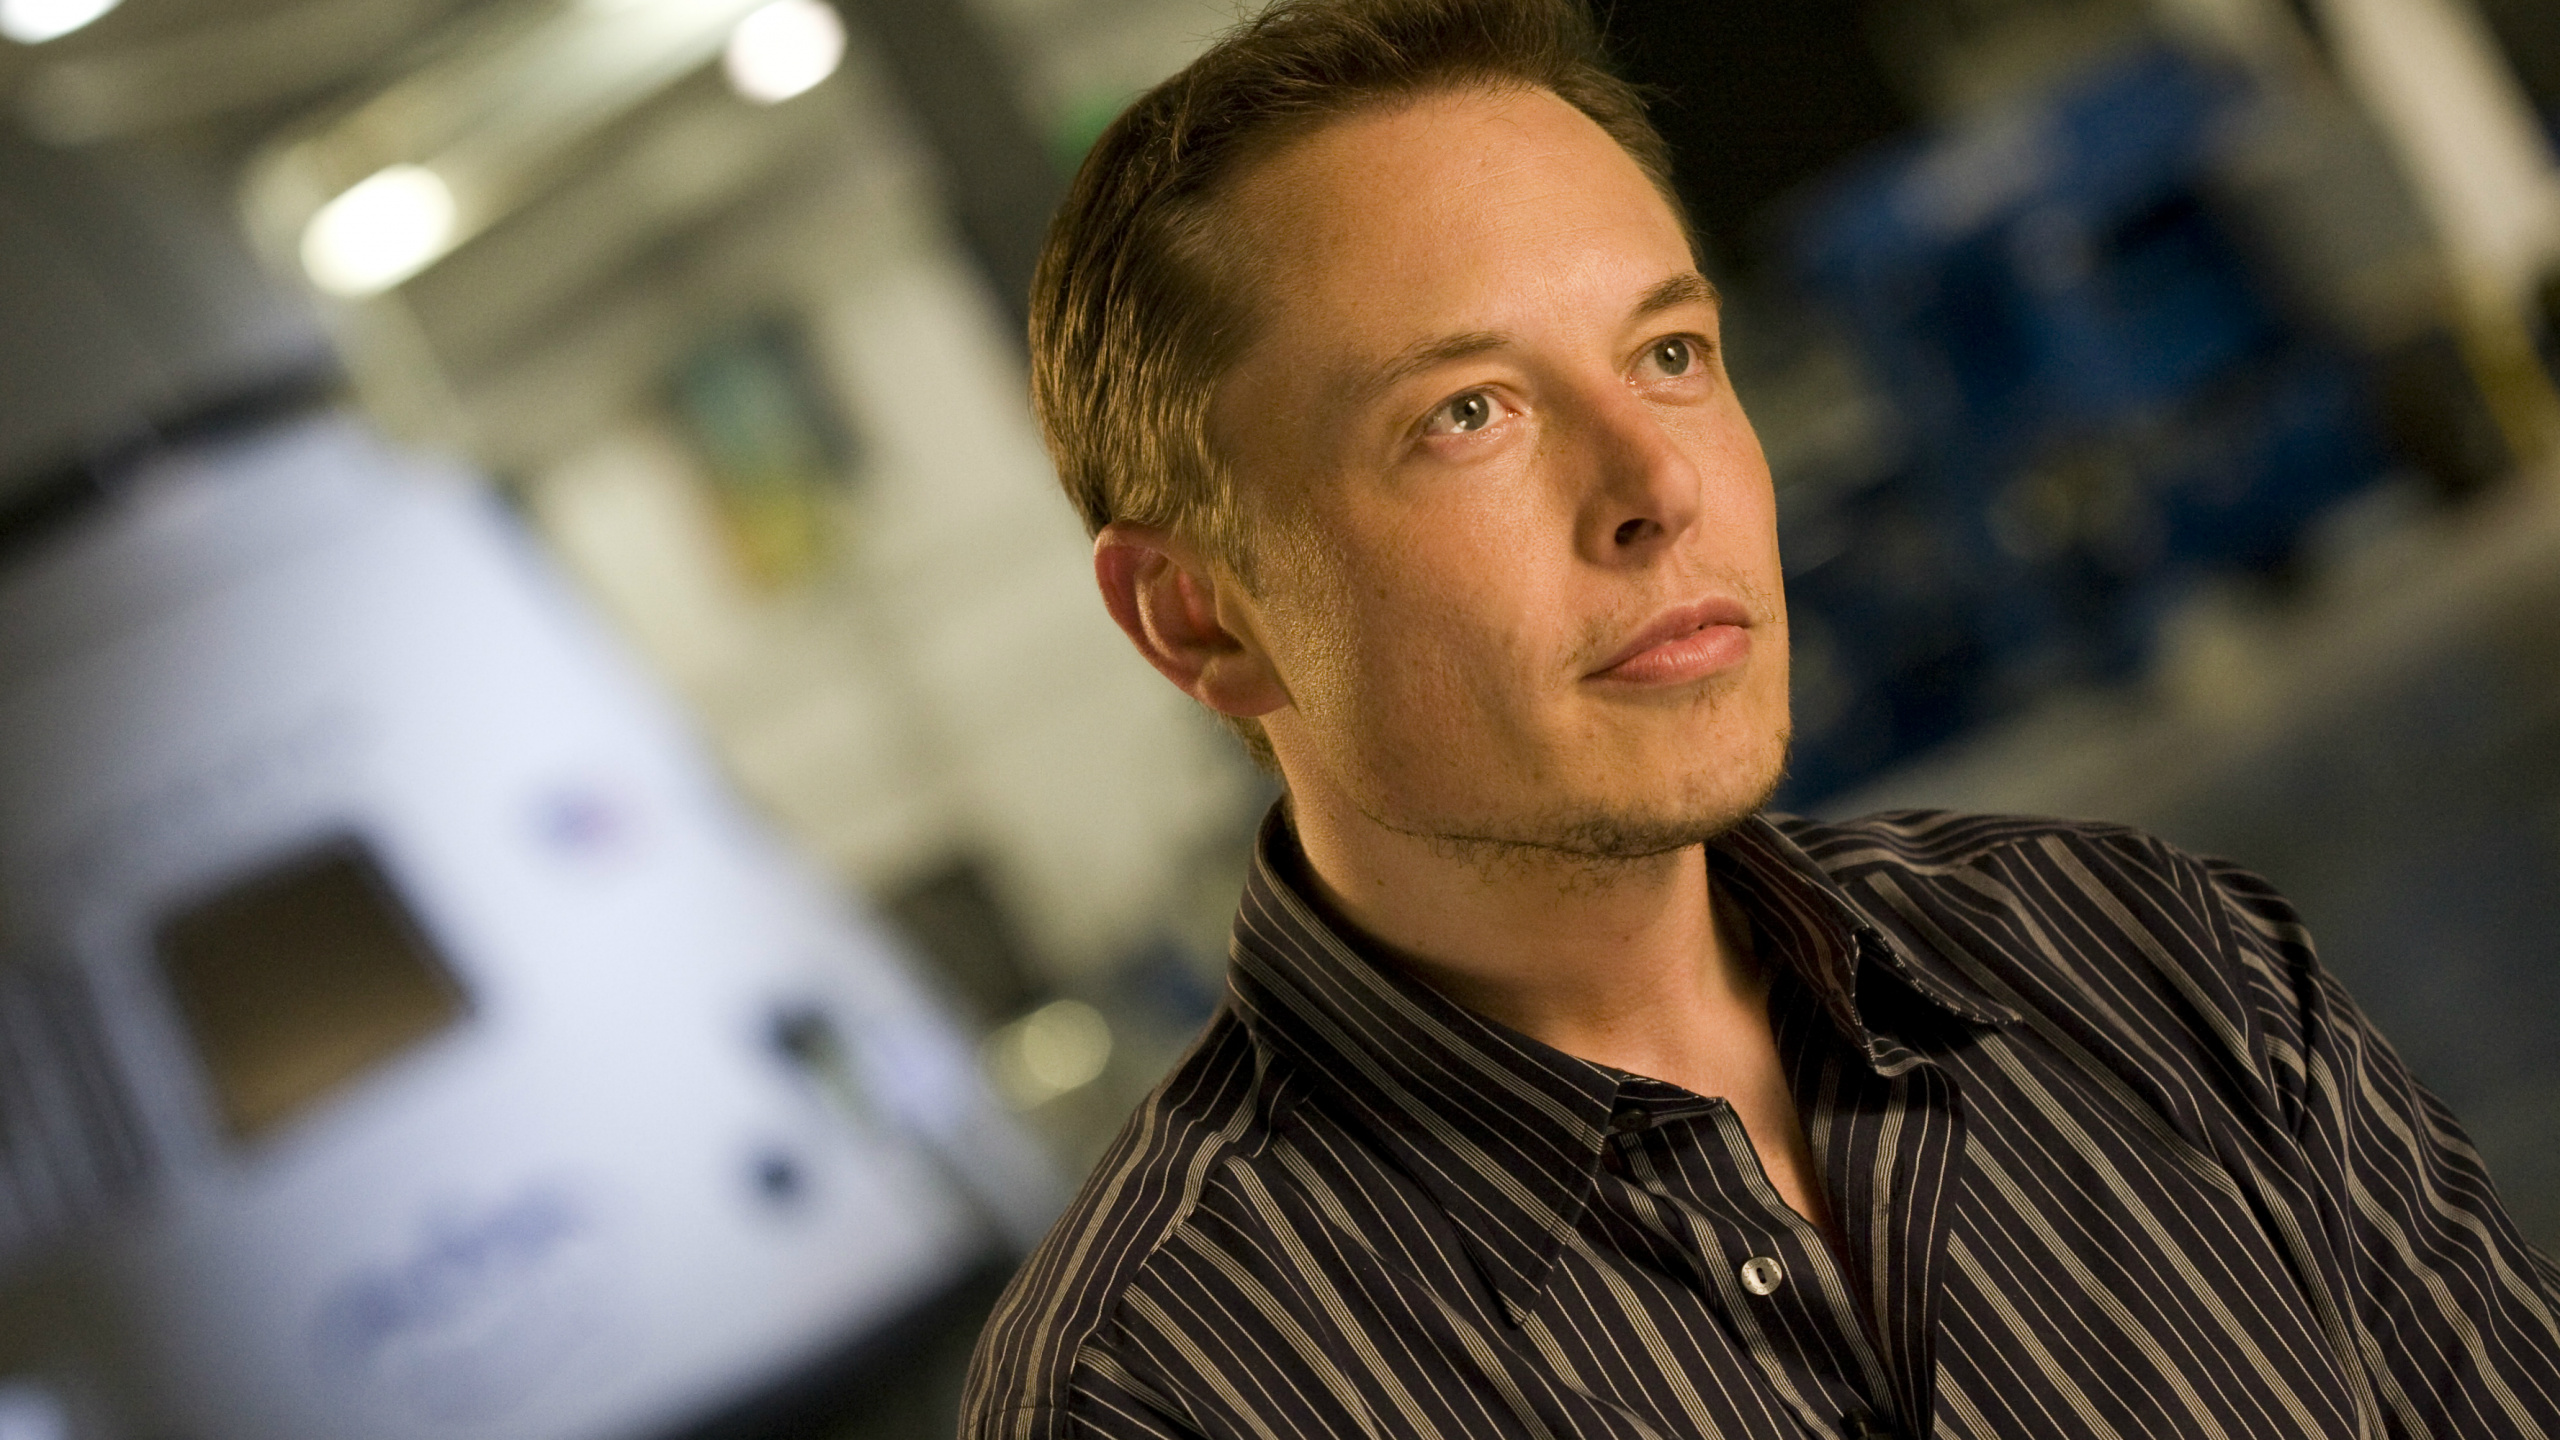 Elon Musk, SpaceX, Hyperboucle, Travailleur en Col Blanc, Les Poils du Visage. Wallpaper in 2560x1440 Resolution